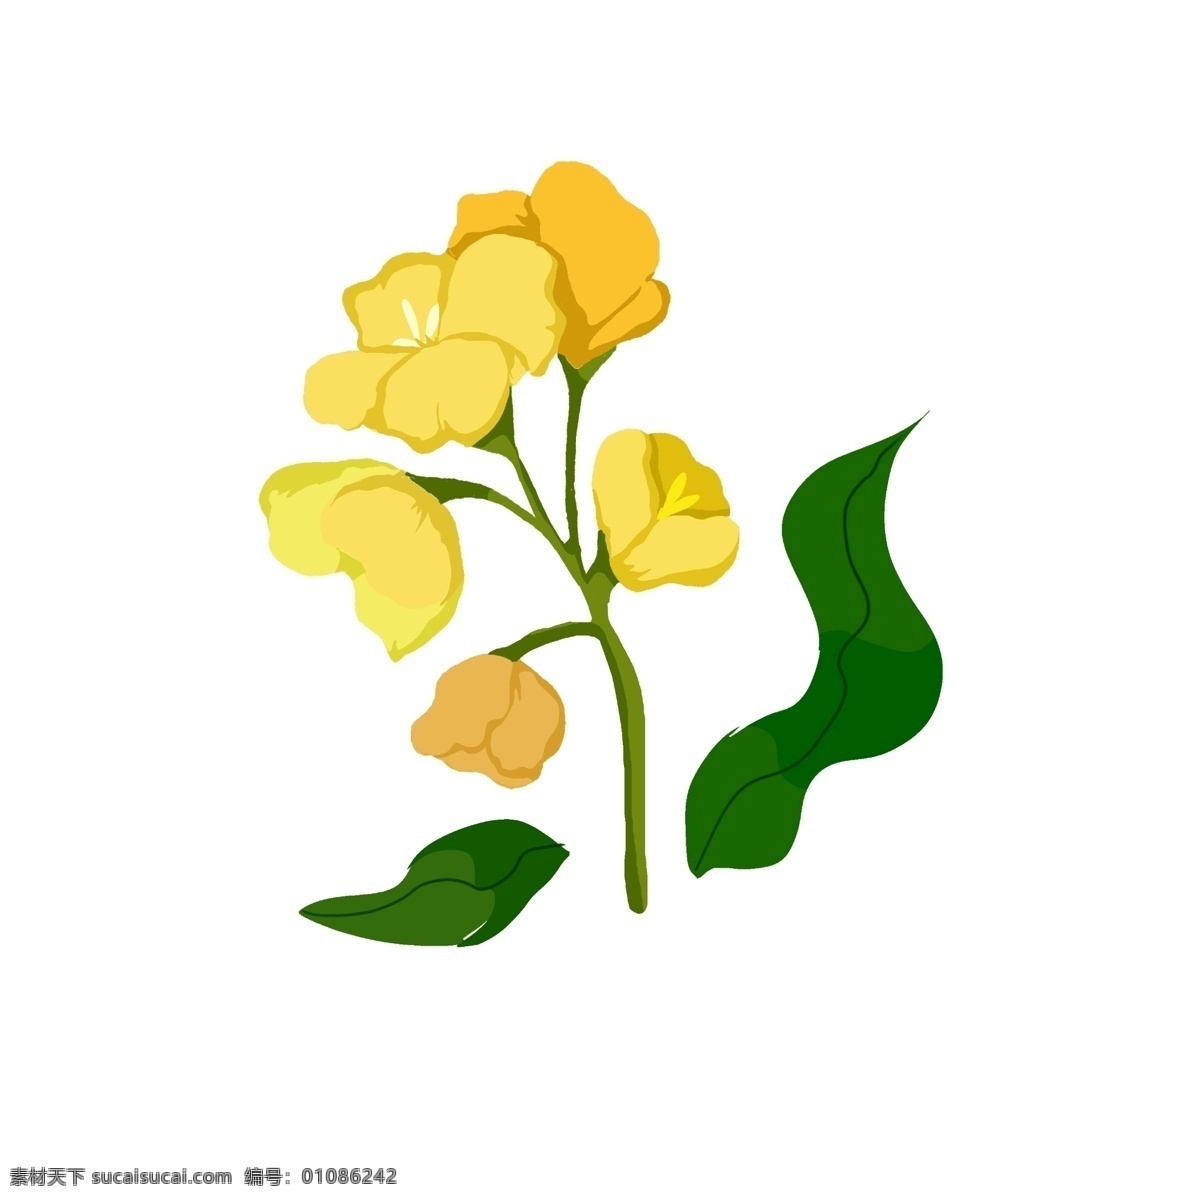 春天 油菜花 植物 插画 自然 春天油菜花 油菜花植物 油菜花特写 绿色叶子插画 黄色花朵插画